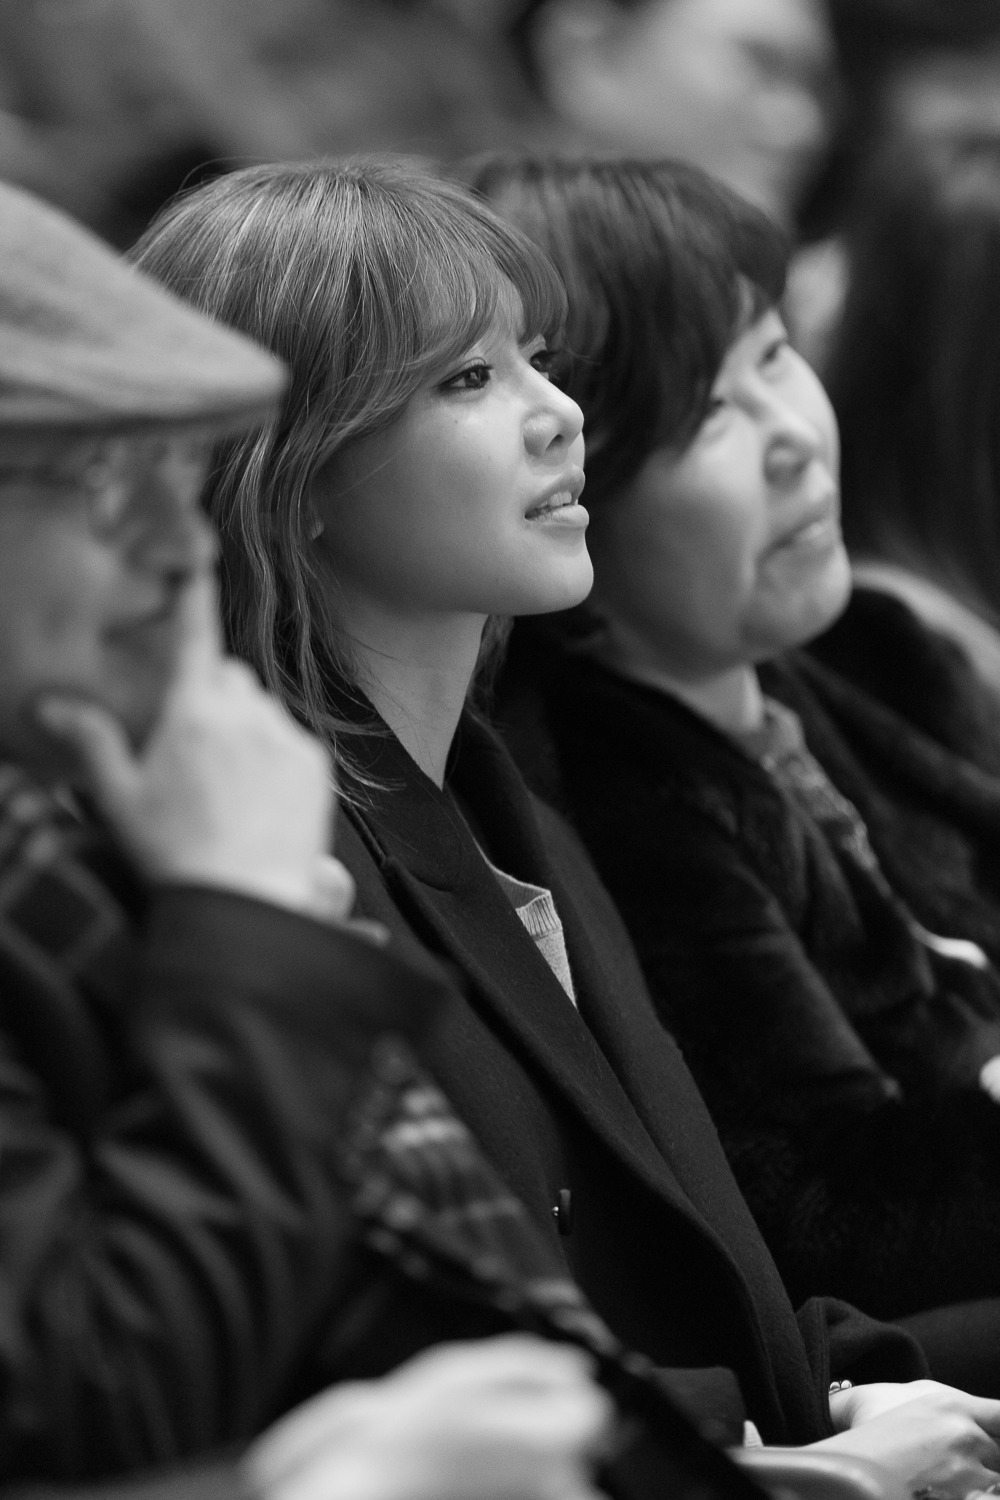 [PIC][20-12-014]SooYoung xuất hiện tại sự kiện "Korean Retinitis Pigmentosa Charity" vào chiều nay 22034C5054B27AF21D1315